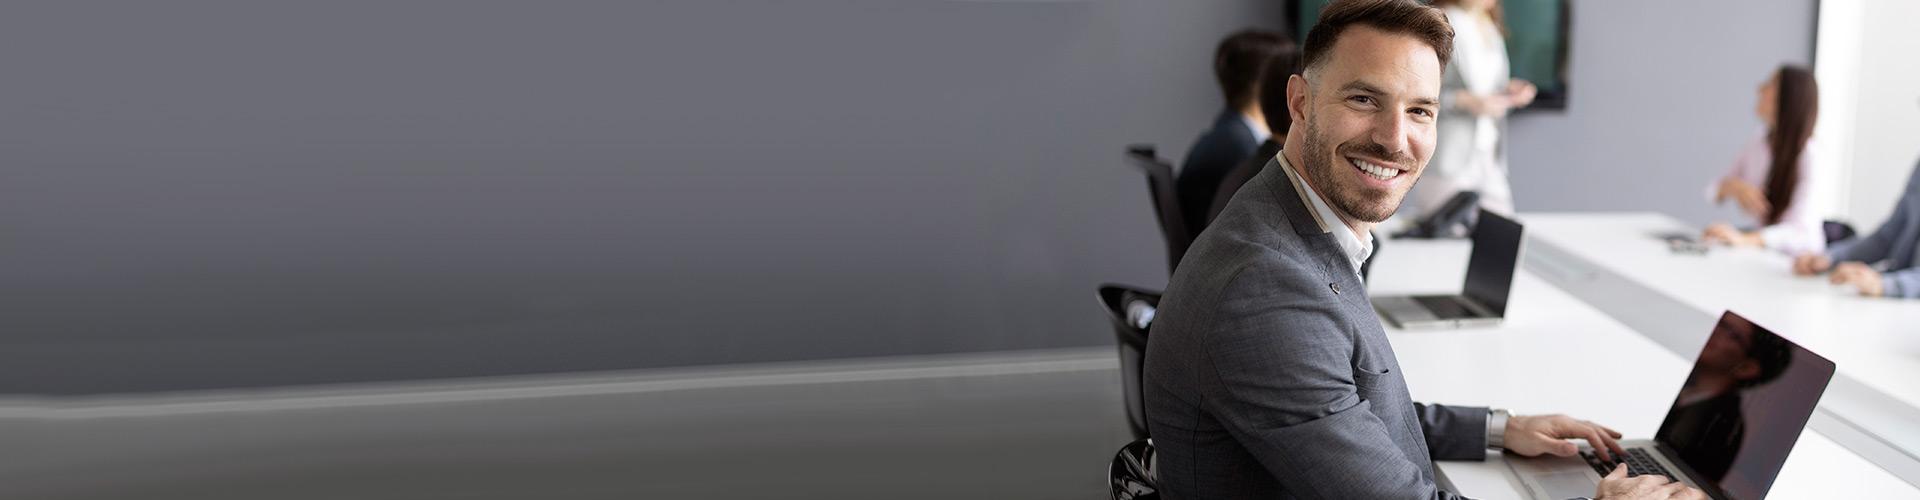 Empresas - Hombre de traje sonriendo sentado junto a su portatil en una sala de reuniones en la oficina